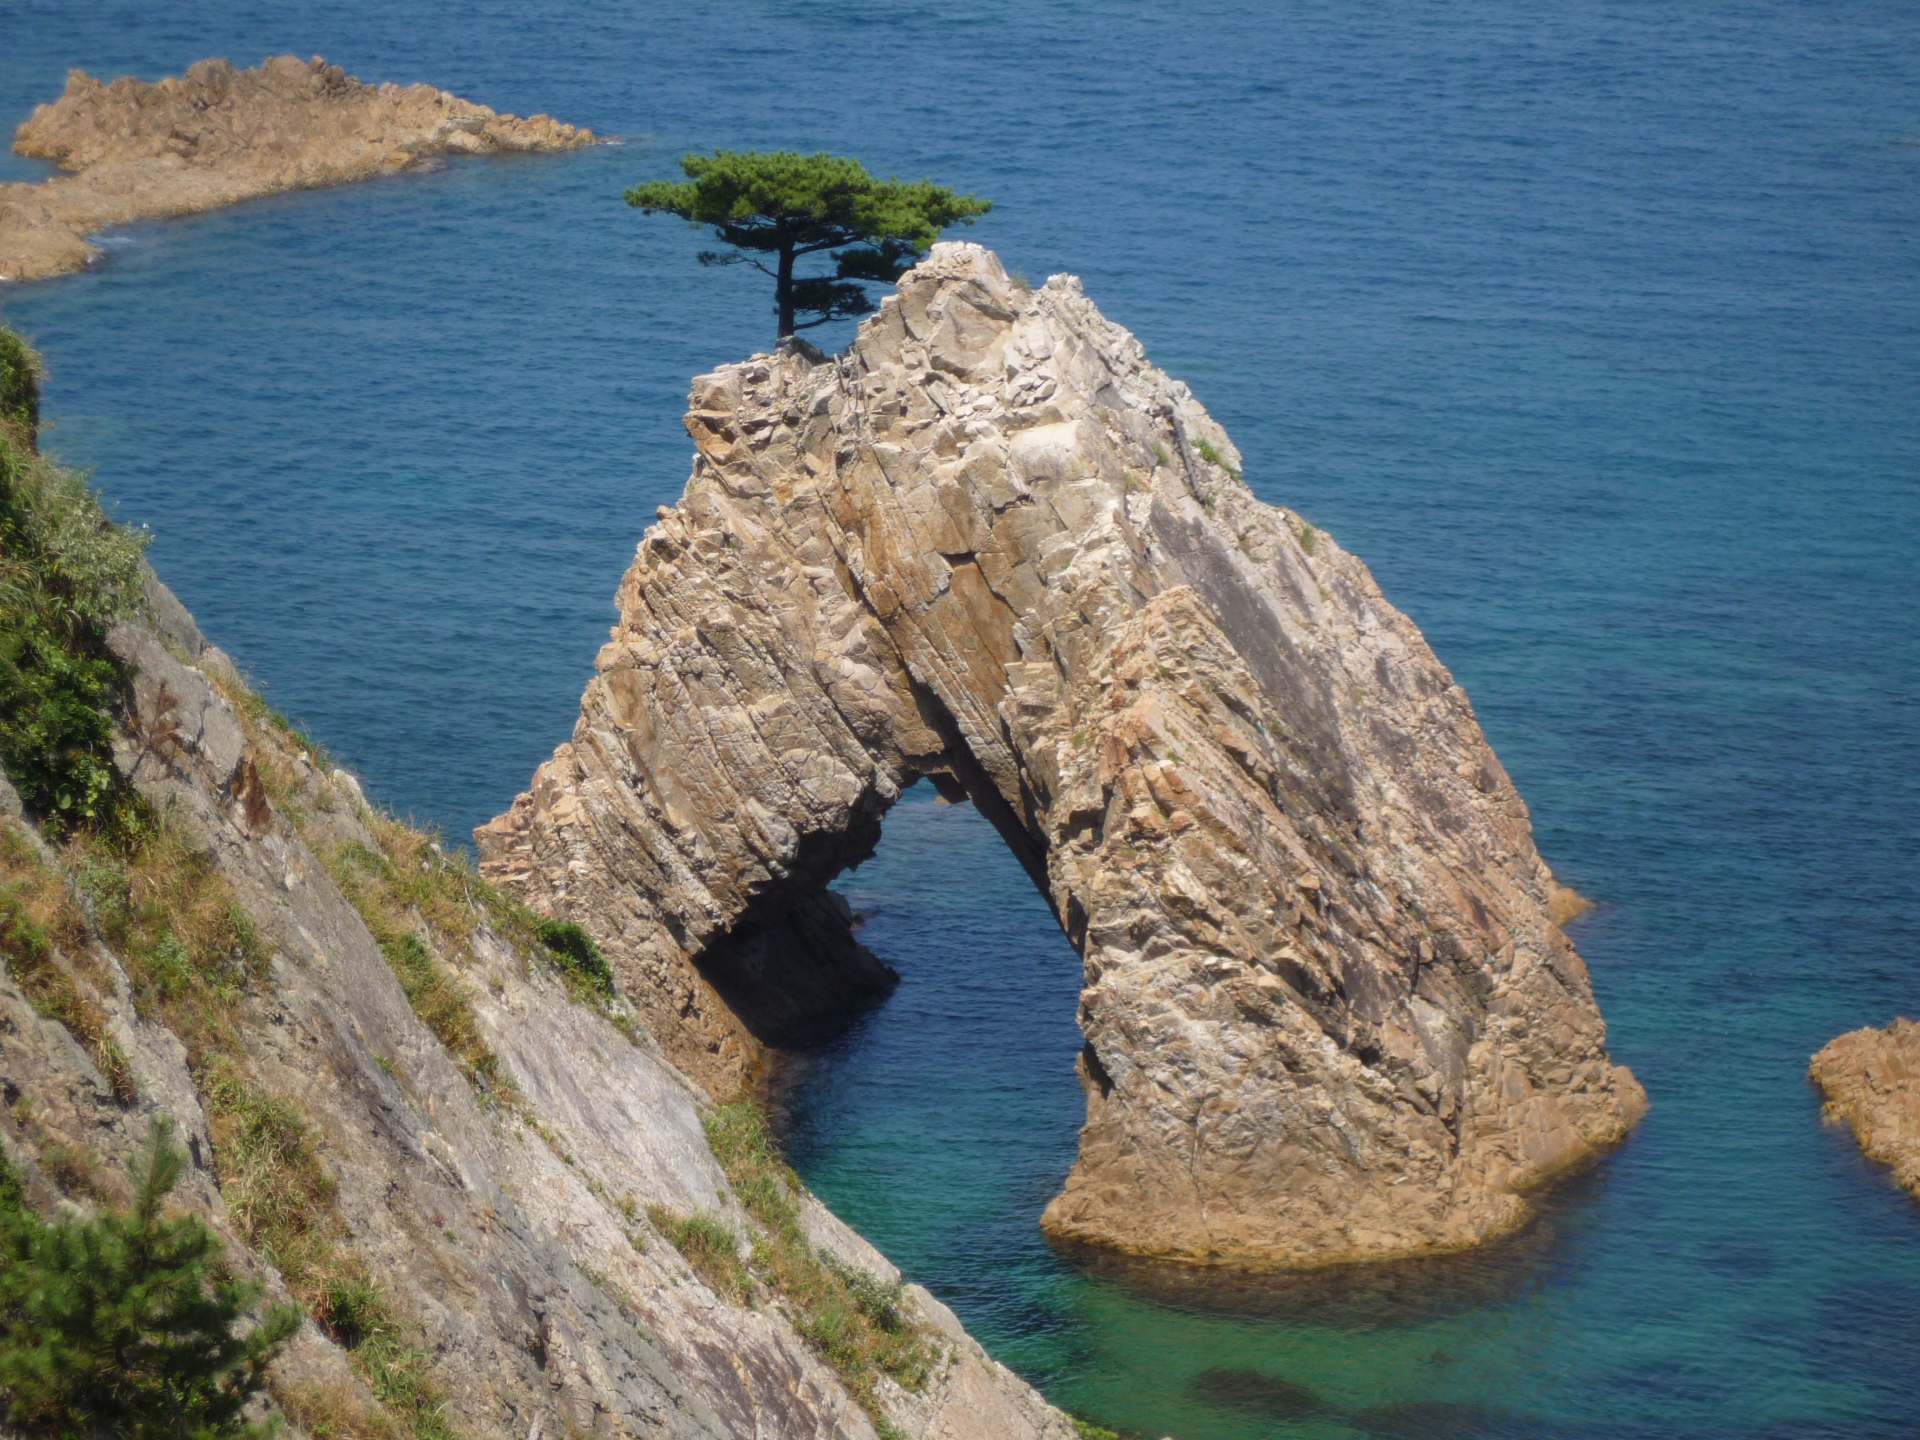 周長 50 米（164 英尺）、高 10 米（33 英尺）的洞穴頂部有一棵漂亮的松樹。仙岩松島是浦富海岸令人難以置信的岩石之一。